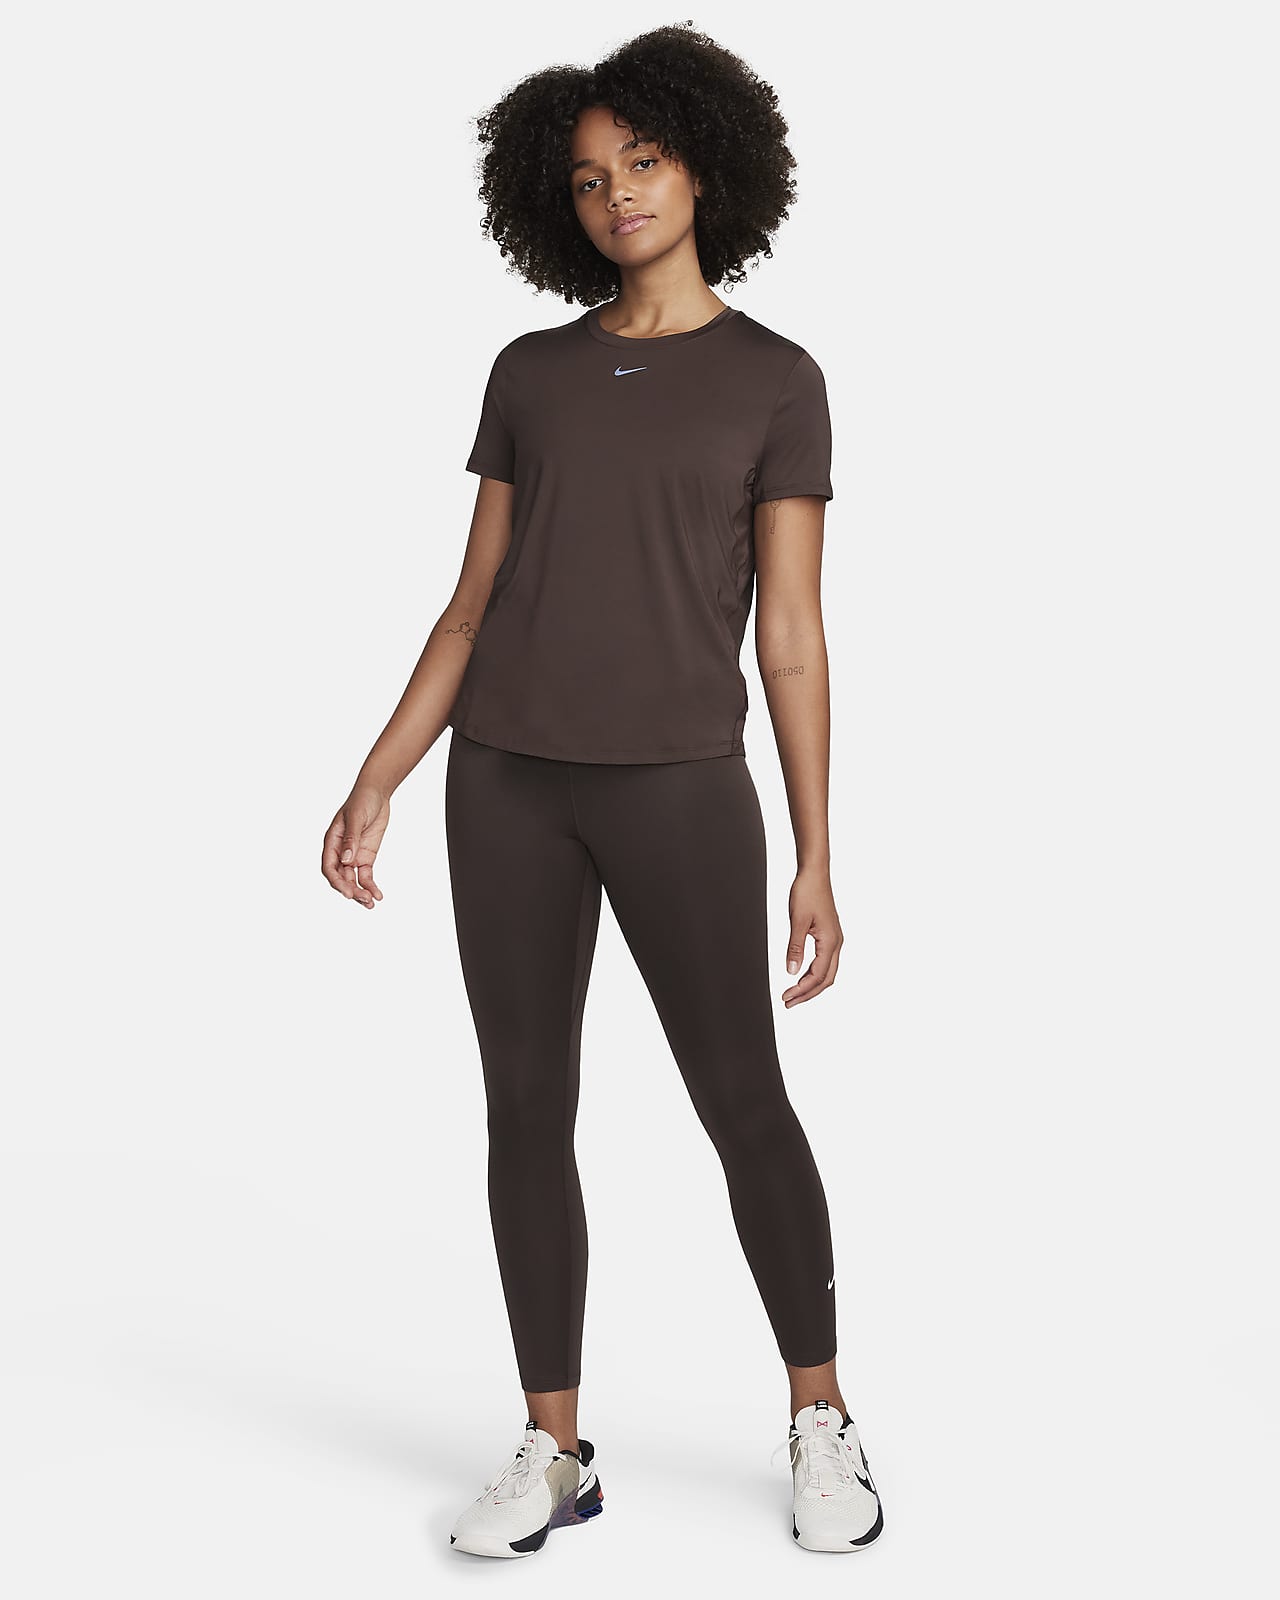 Nike Yoga Therma-FIT Women's Top. Nike LU